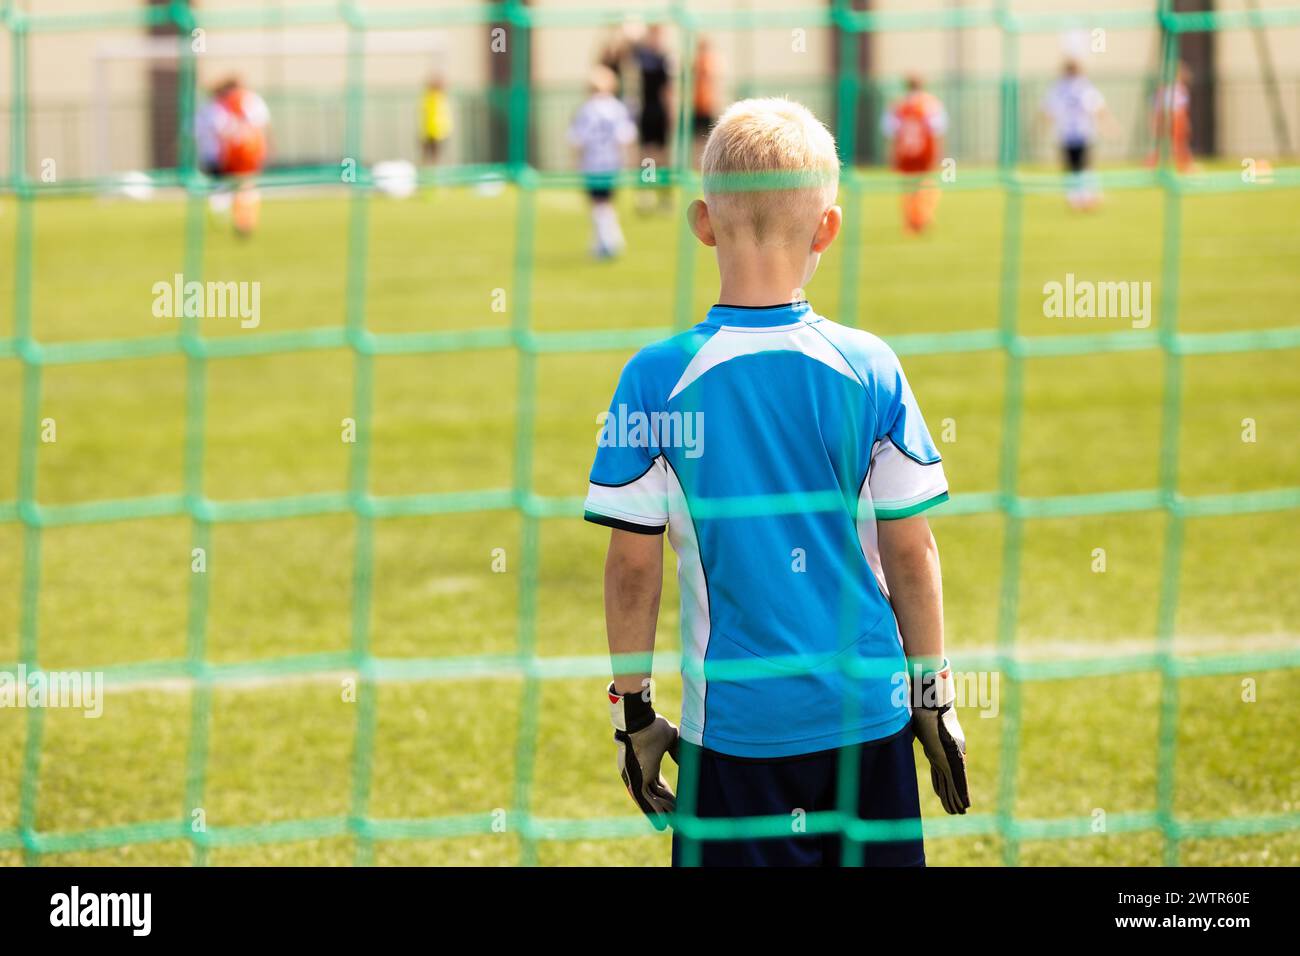 Petit garçon en uniforme de gardien de but et gants debout dans un but de football. Les enfants jouent au football sur le terrain de sport scolaire Banque D'Images